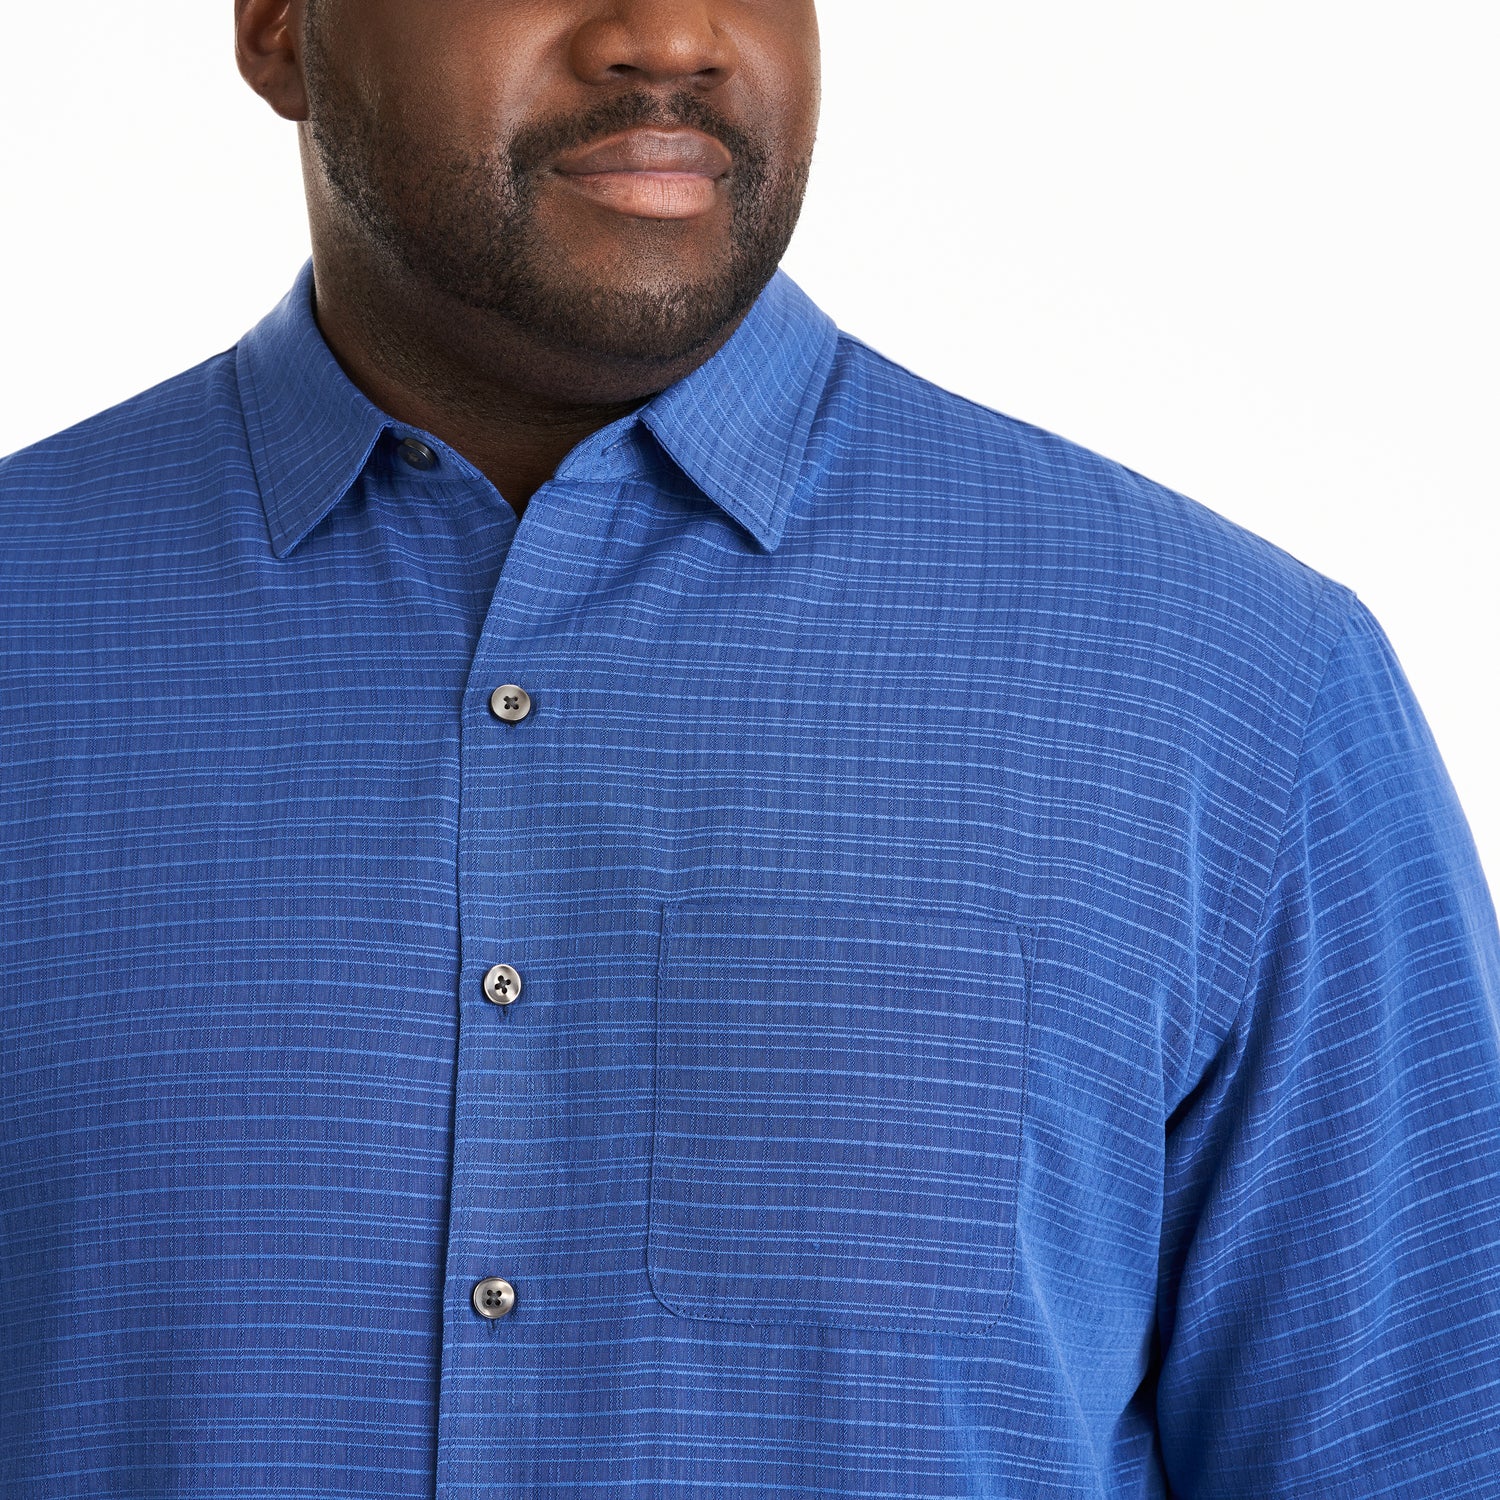 Weekend Cross Dye Texture Plaid Short Sleeve Shirt - Big &amp; Tall